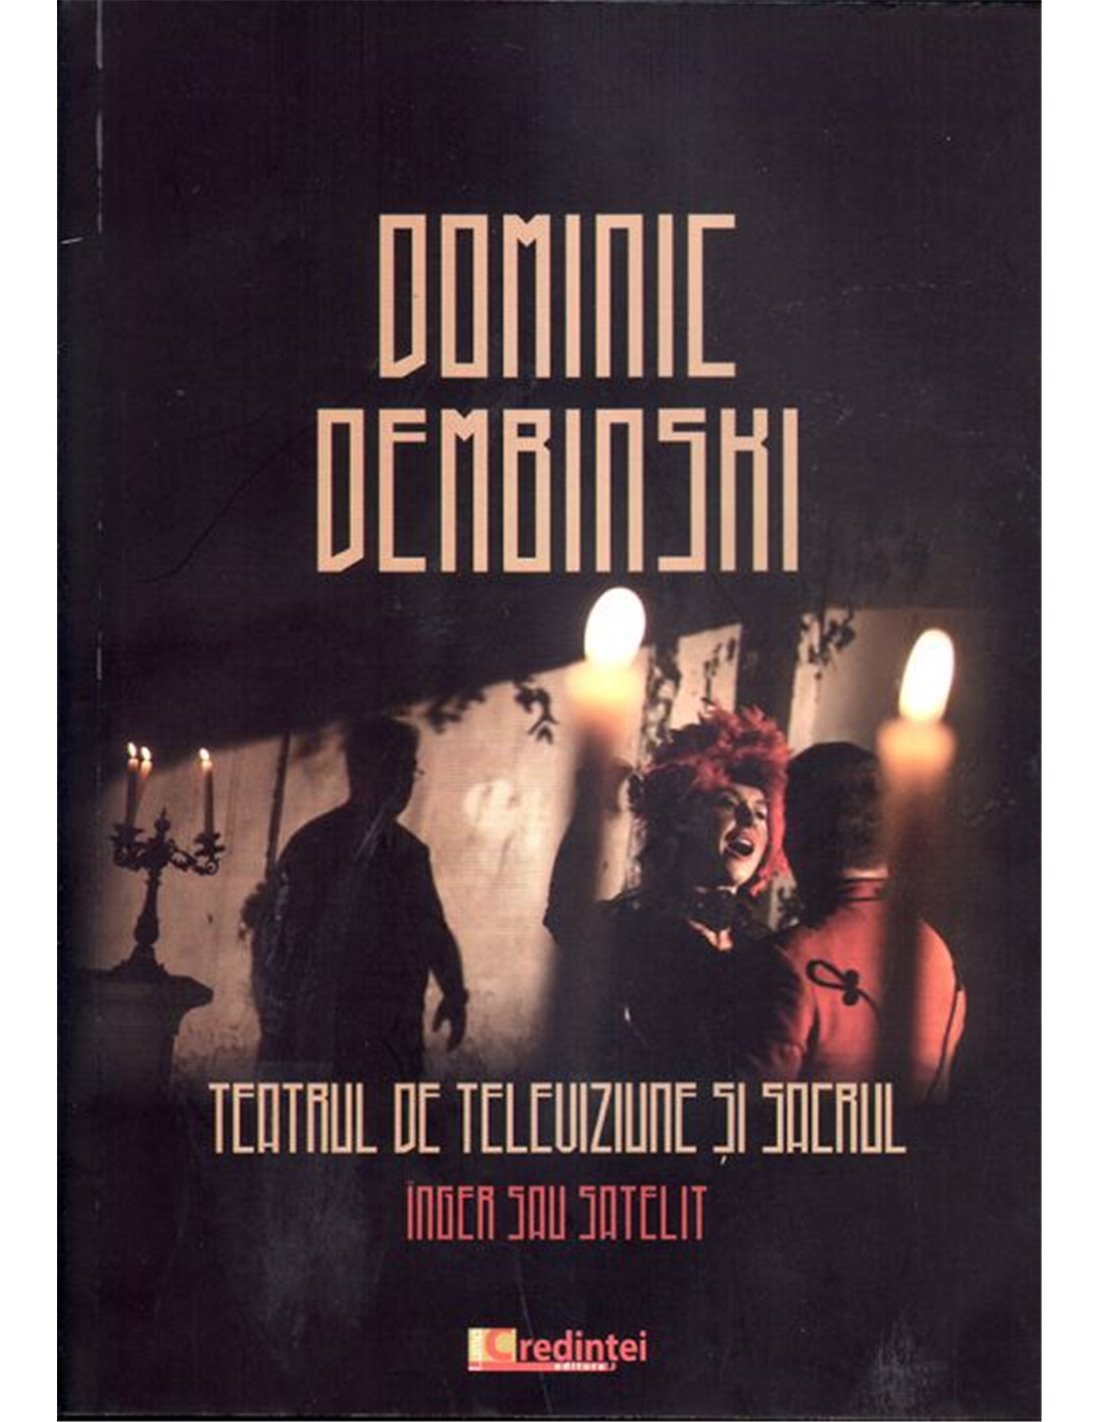 Teatrul de televiziune si sacrul - Dominic Dembrinski - Editura Lumea Credintei